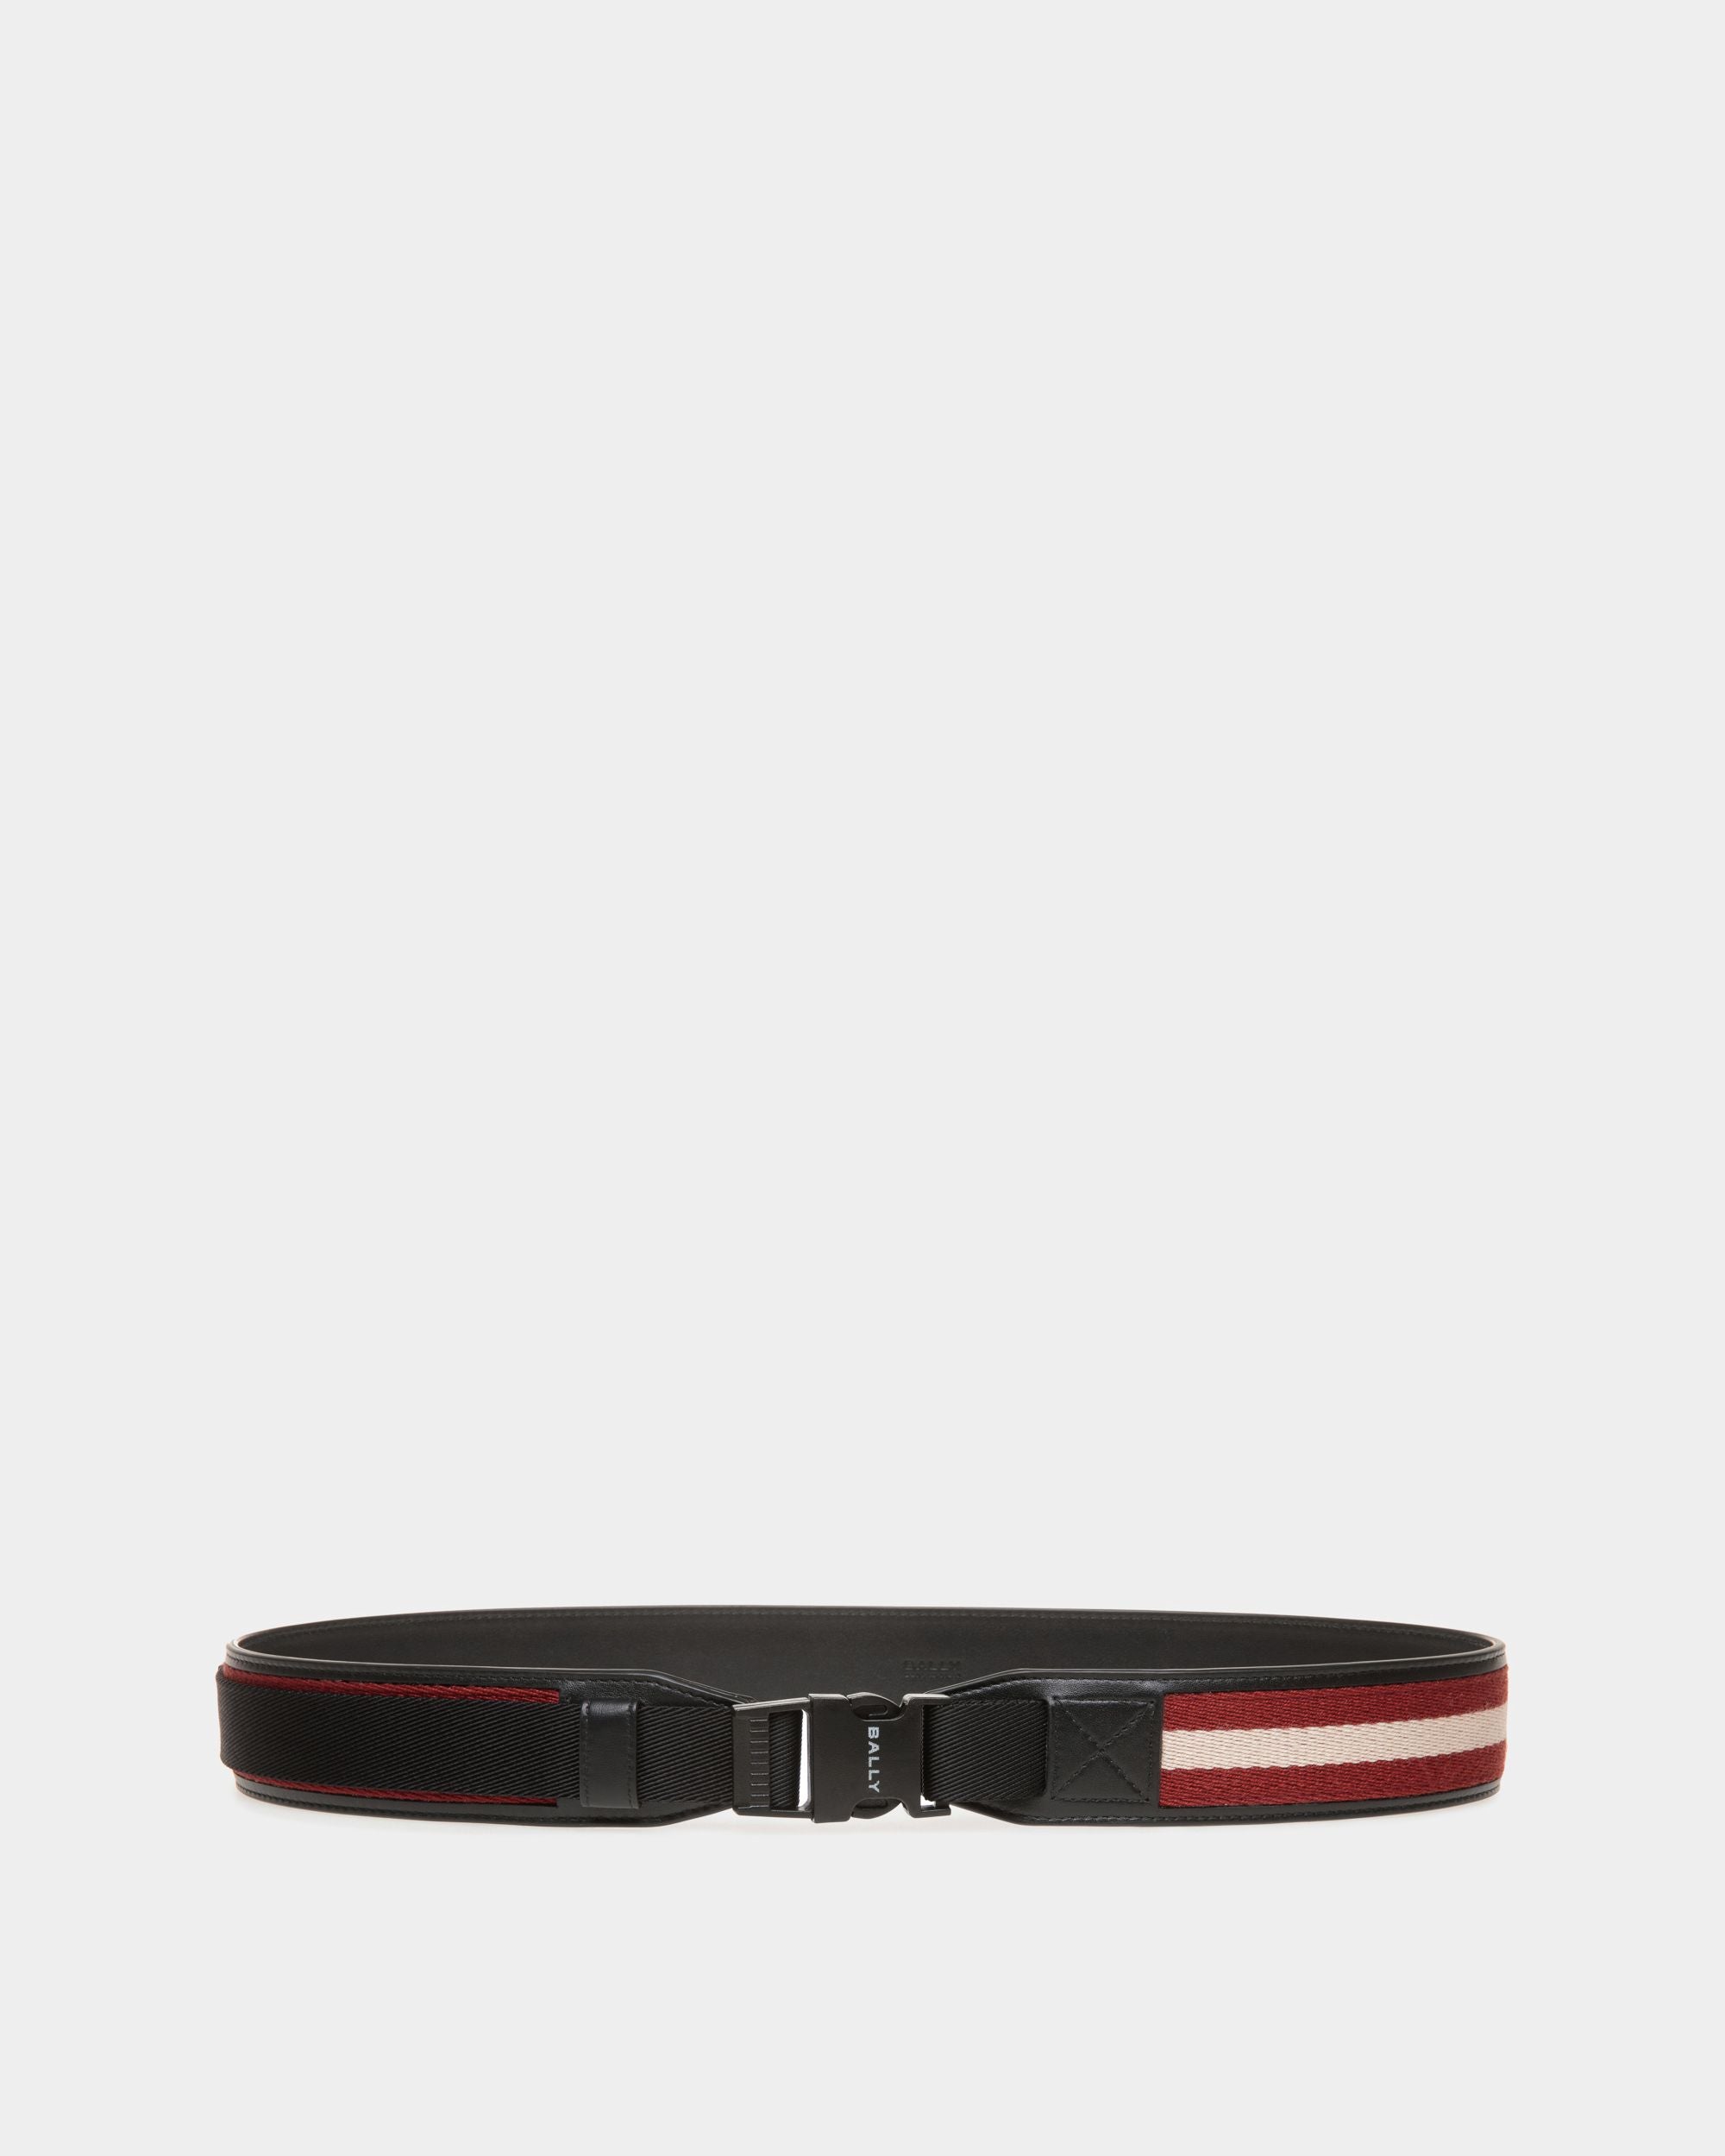 Tobyn 40 mm | Cintura da uomo in pelle e tessuto rosso, bianco e nero | Bally | Still Life Fronte